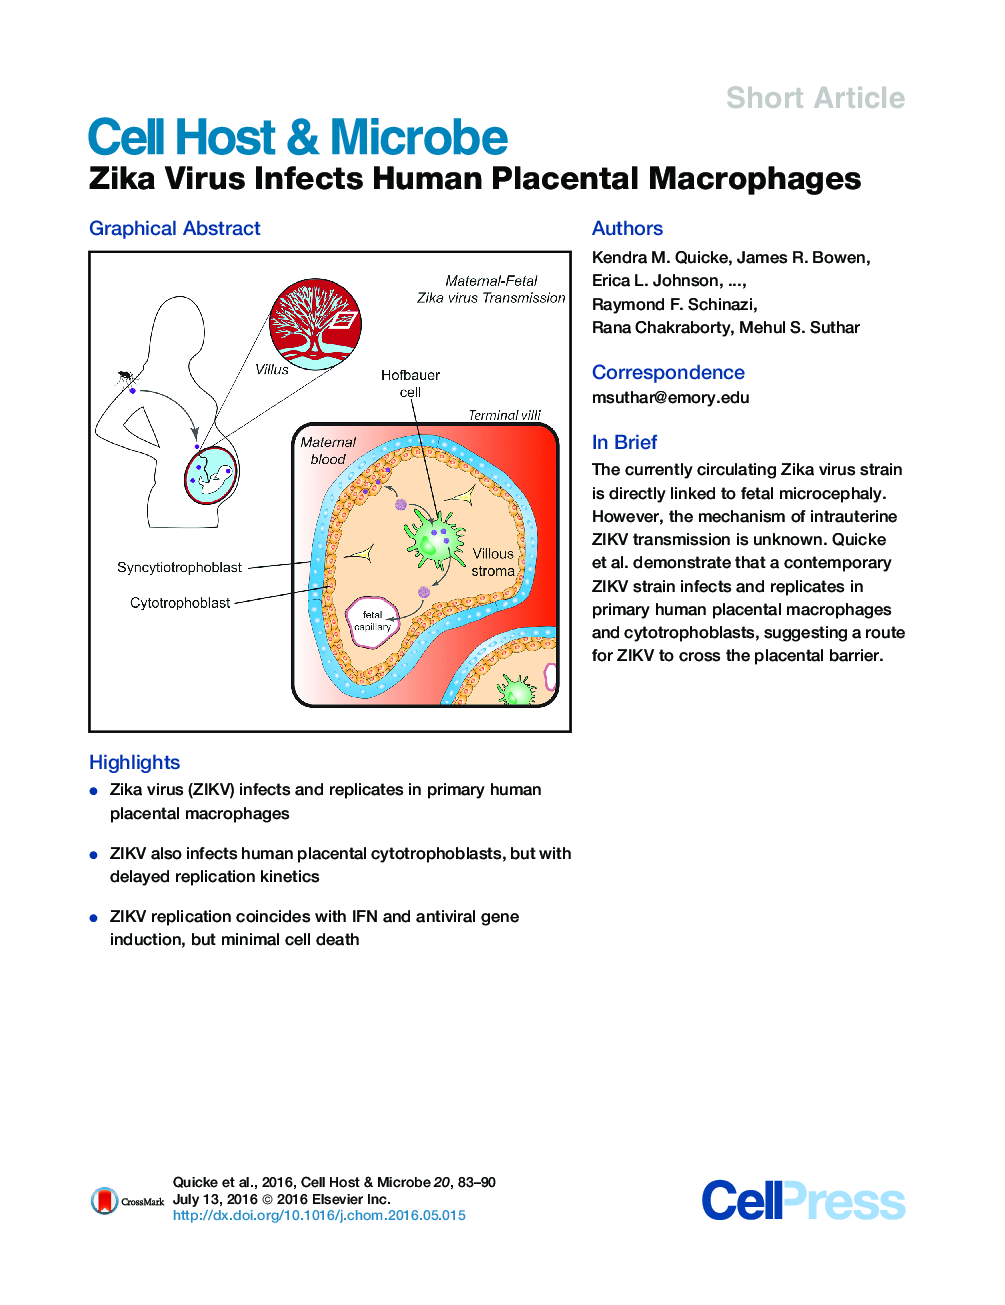 ویروس زیکا مکانیسم های انسانی را آلوده می کند 